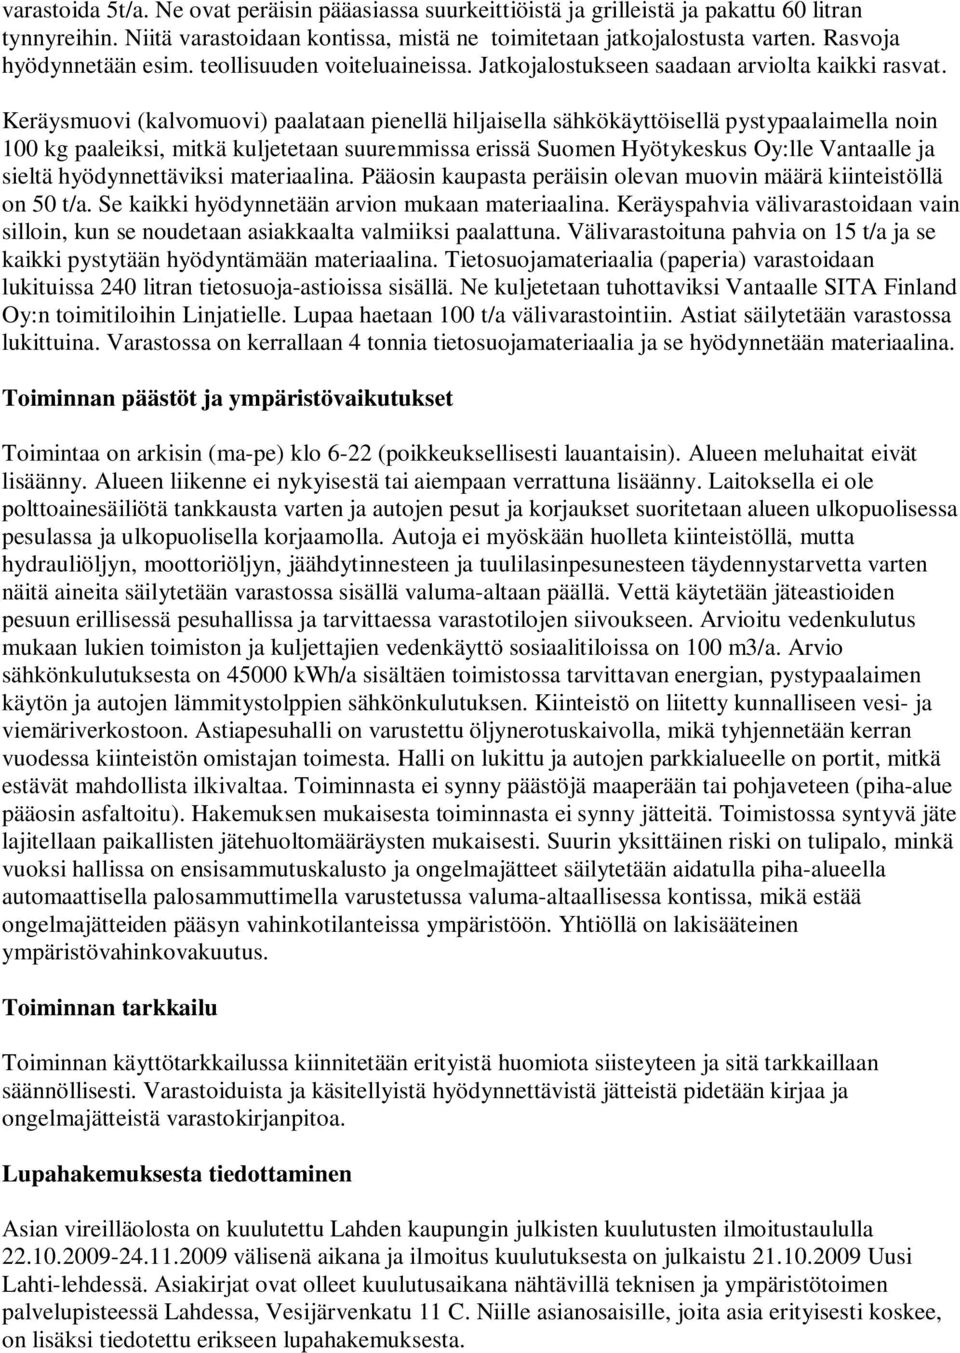 Keräysmuovi (kalvomuovi) paalataan pienellä hiljaisella sähkökäyttöisellä pystypaalaimella noin 100 kg paaleiksi, mitkä kuljetetaan suuremmissa erissä Suomen Hyötykeskus Oy:lle Vantaalle ja sieltä